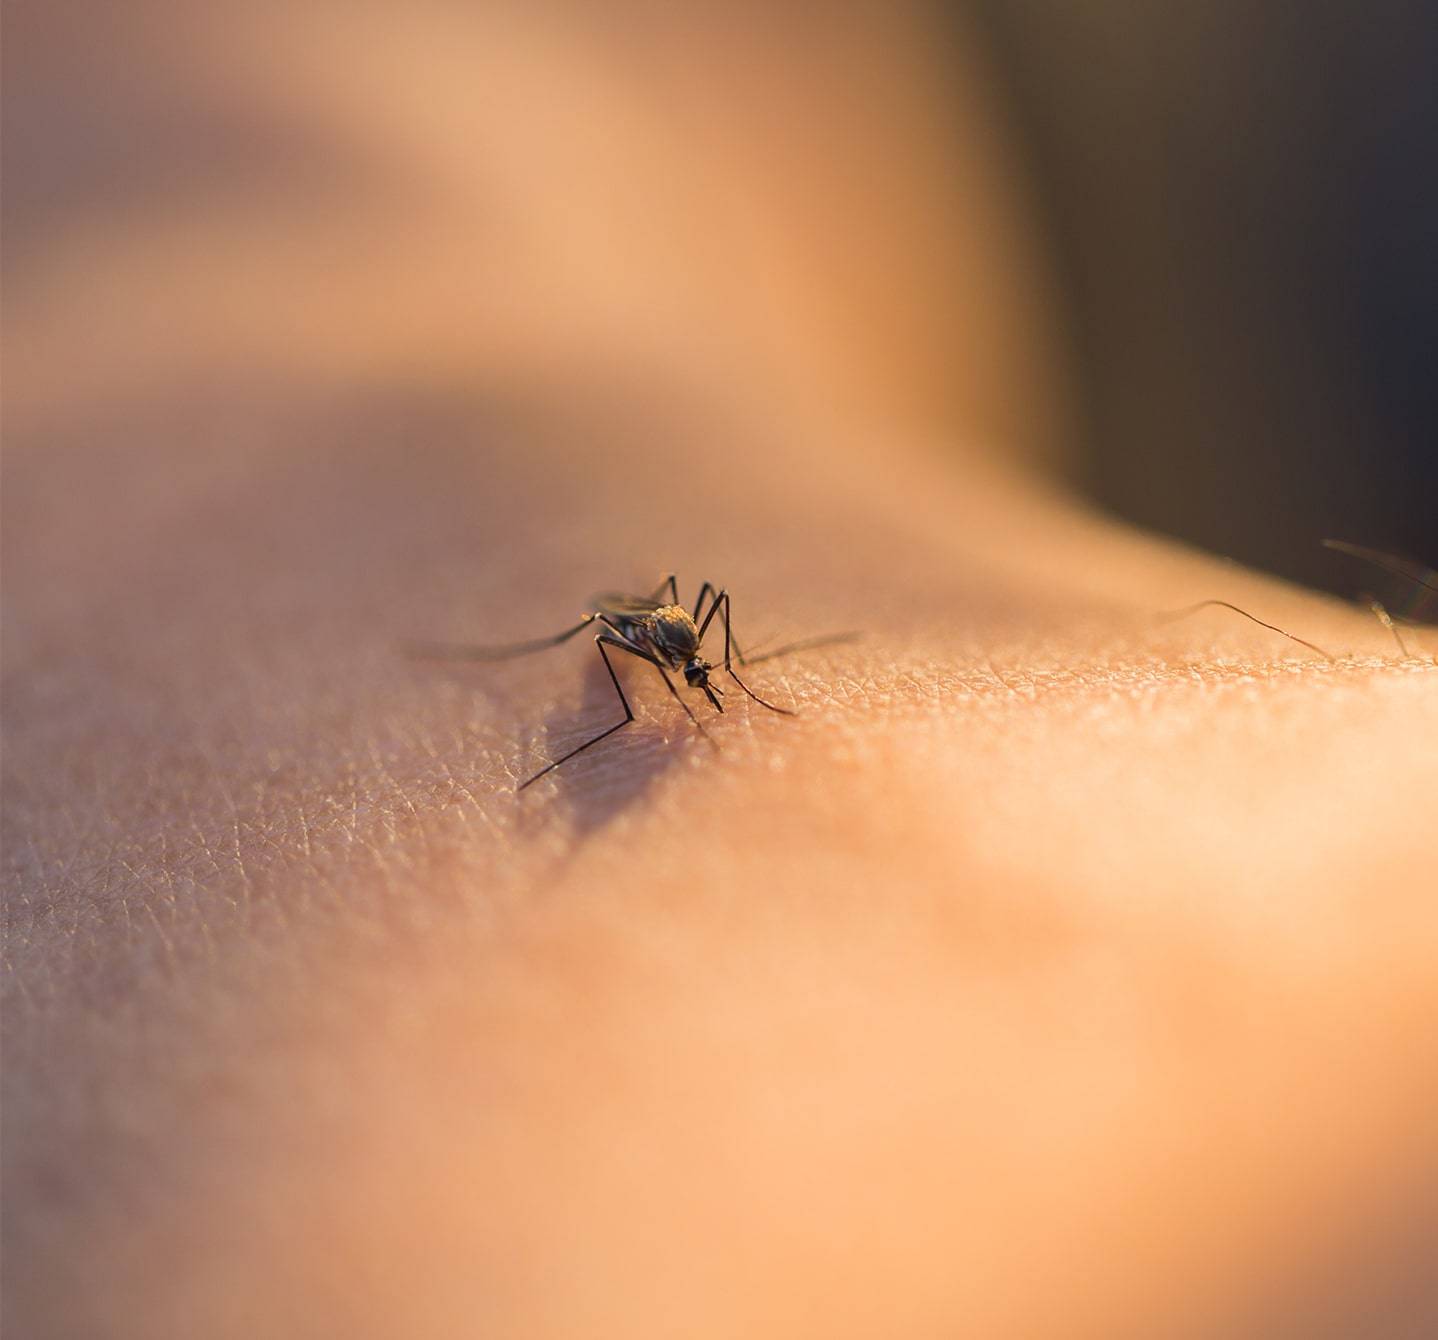 Stechmücke, die auf der Haut eines Menschen sitzt und Blut saugt. Chemische Substanzen im Speichel des Insekts können Symptome einer Mückenstichallergie verursachen.